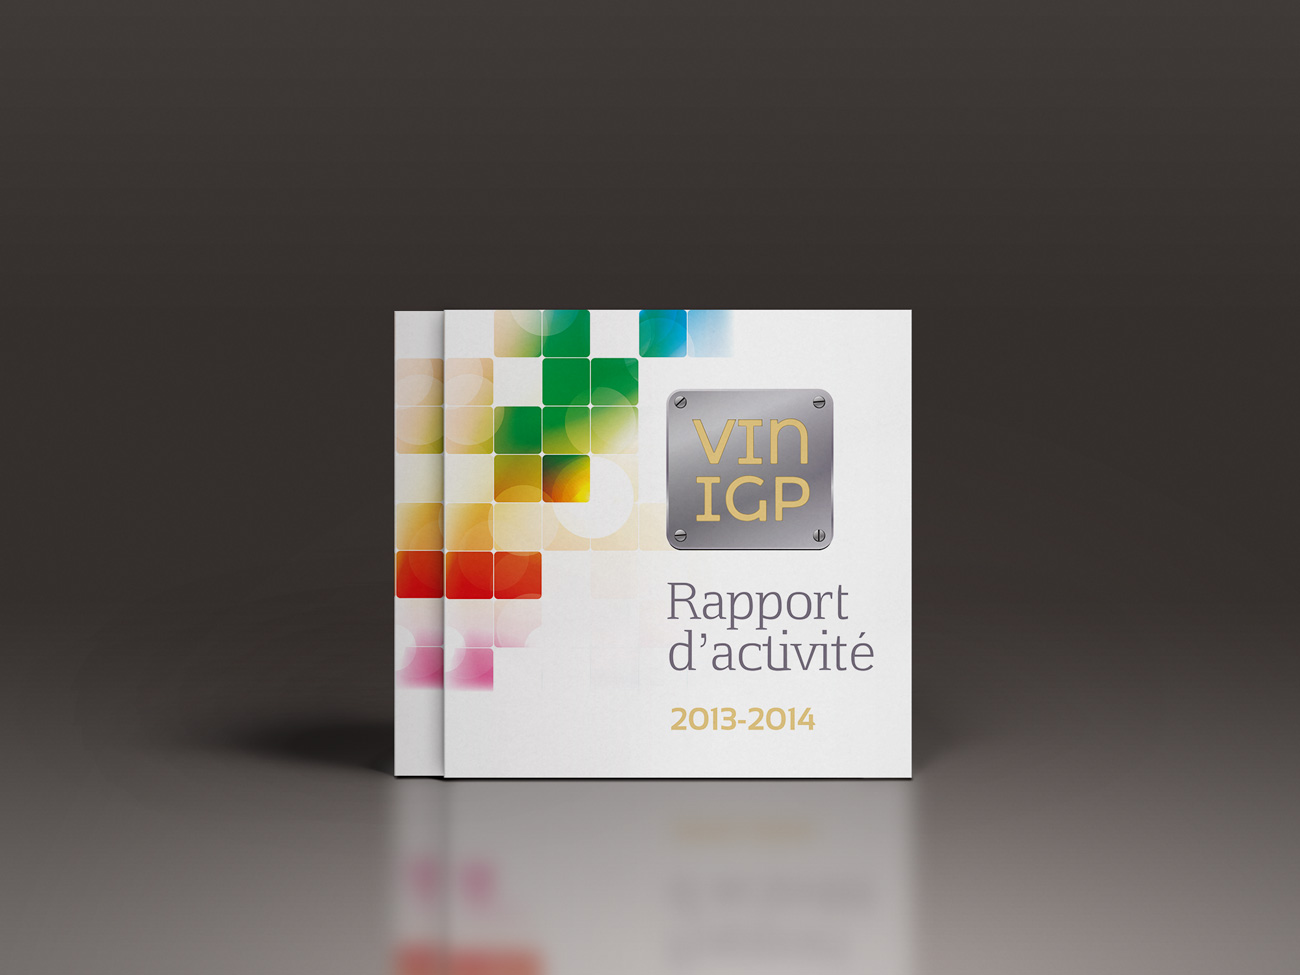 Rapport d'activités 2014 Vin IGP